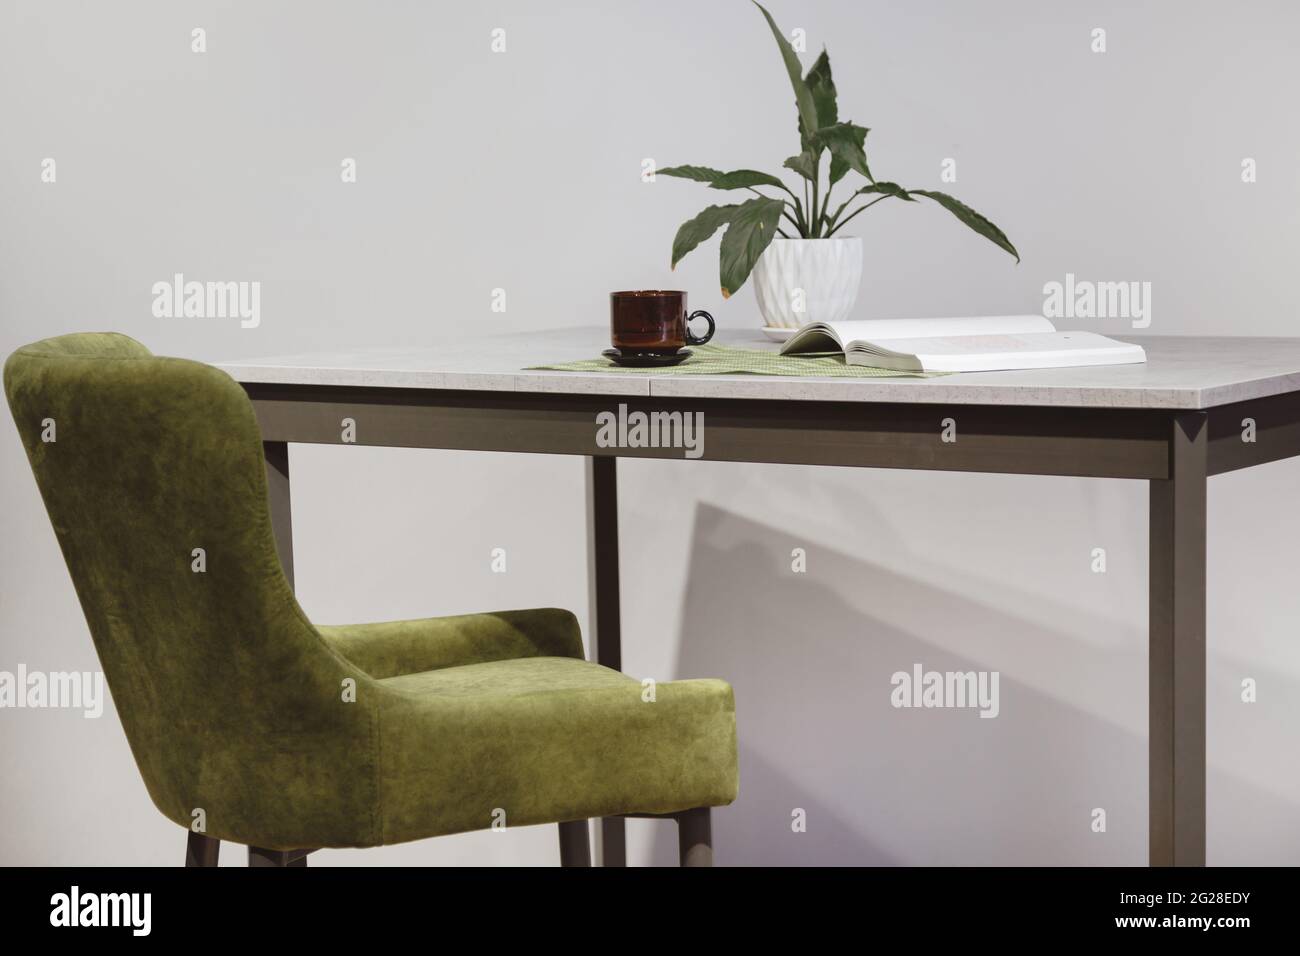 Moderner minimalistischer Arbeitsplatz. Sessel aus grünem Velours und Loft-Tisch mit Heimpflanze in weißem Topf Stockfoto